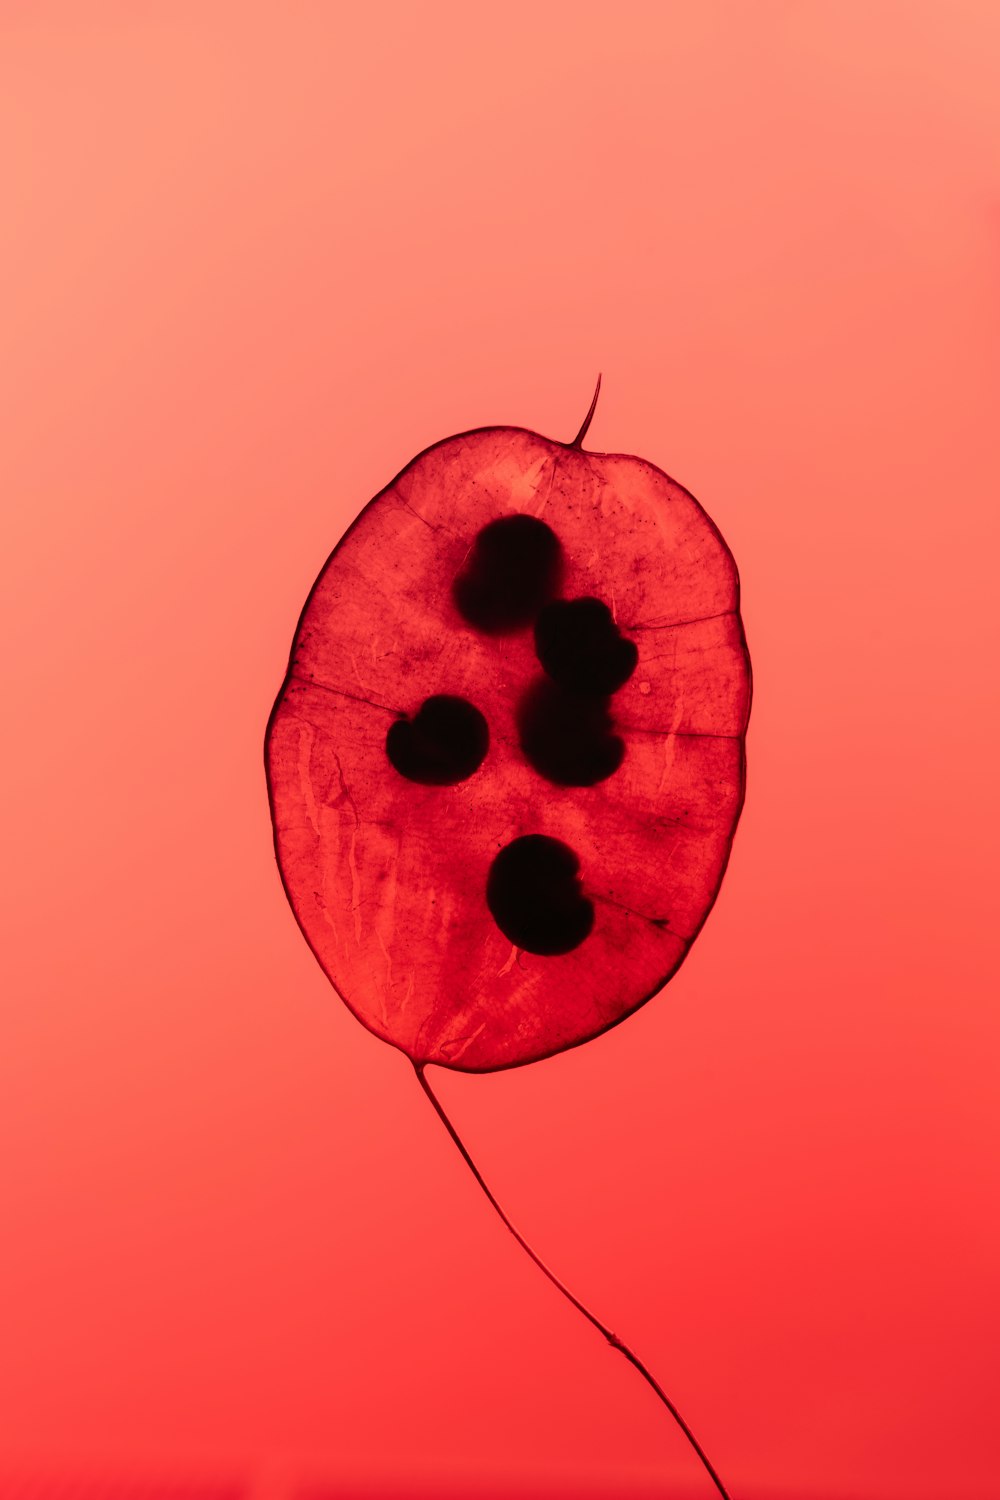 uma folha vermelha com pontos pretos sobre ela